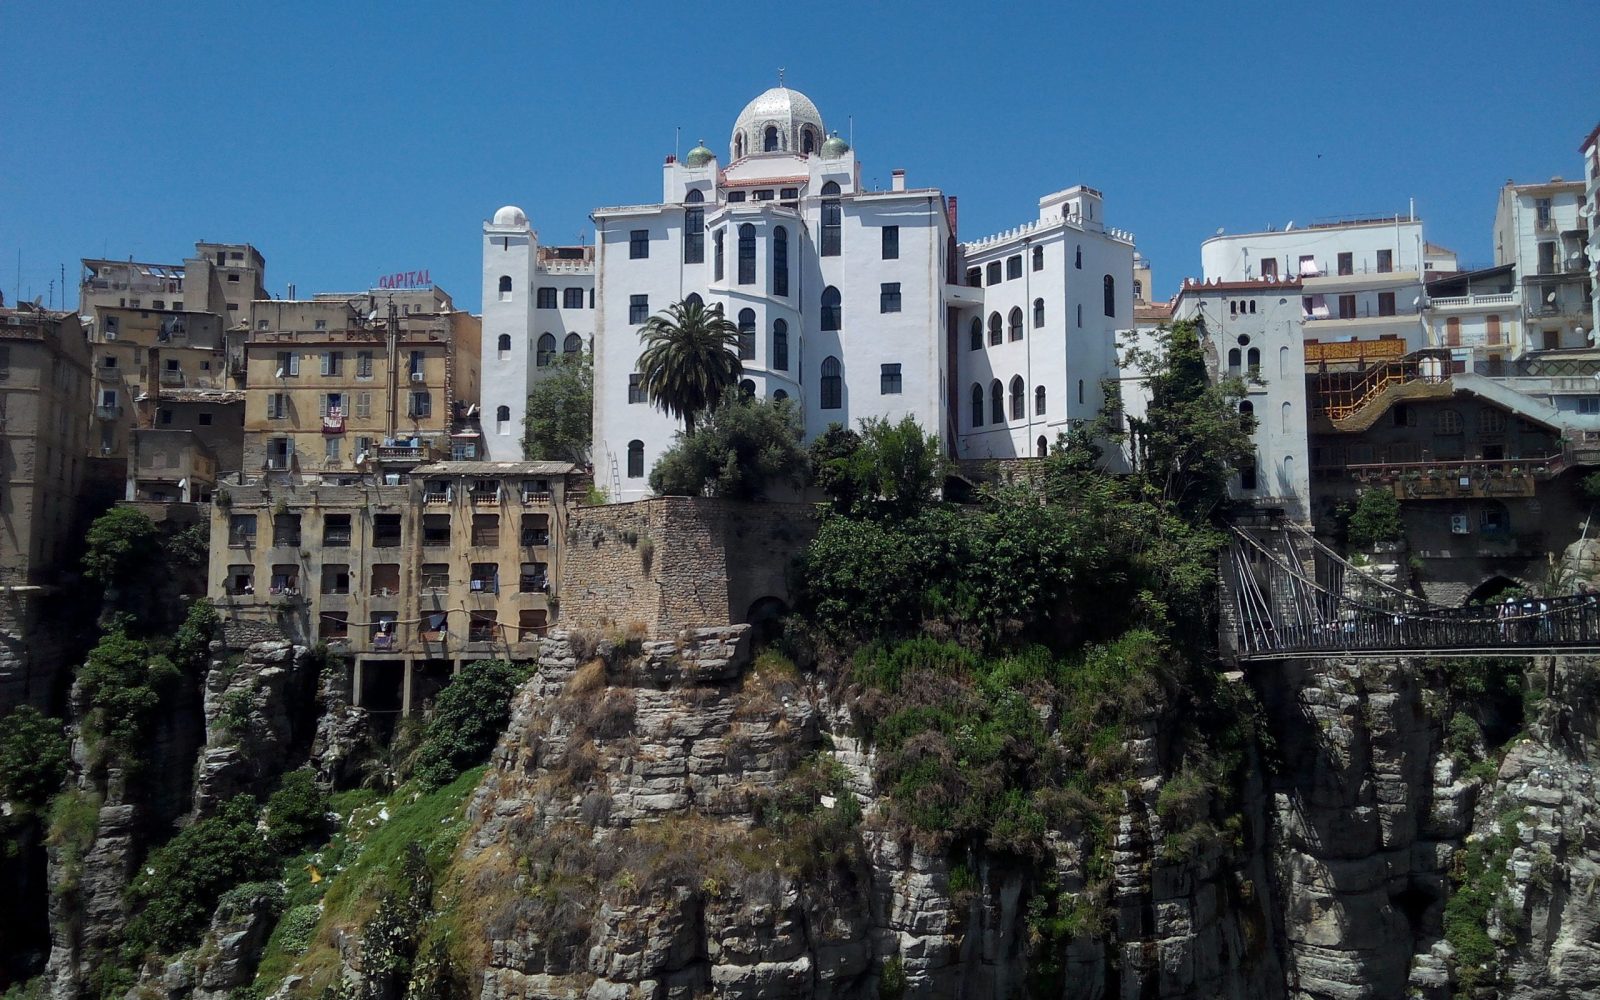 La ville de Constantine - Algérie, architecture, tourisme, tourisme dentaire en Algérie, tourisme médical en Algérie